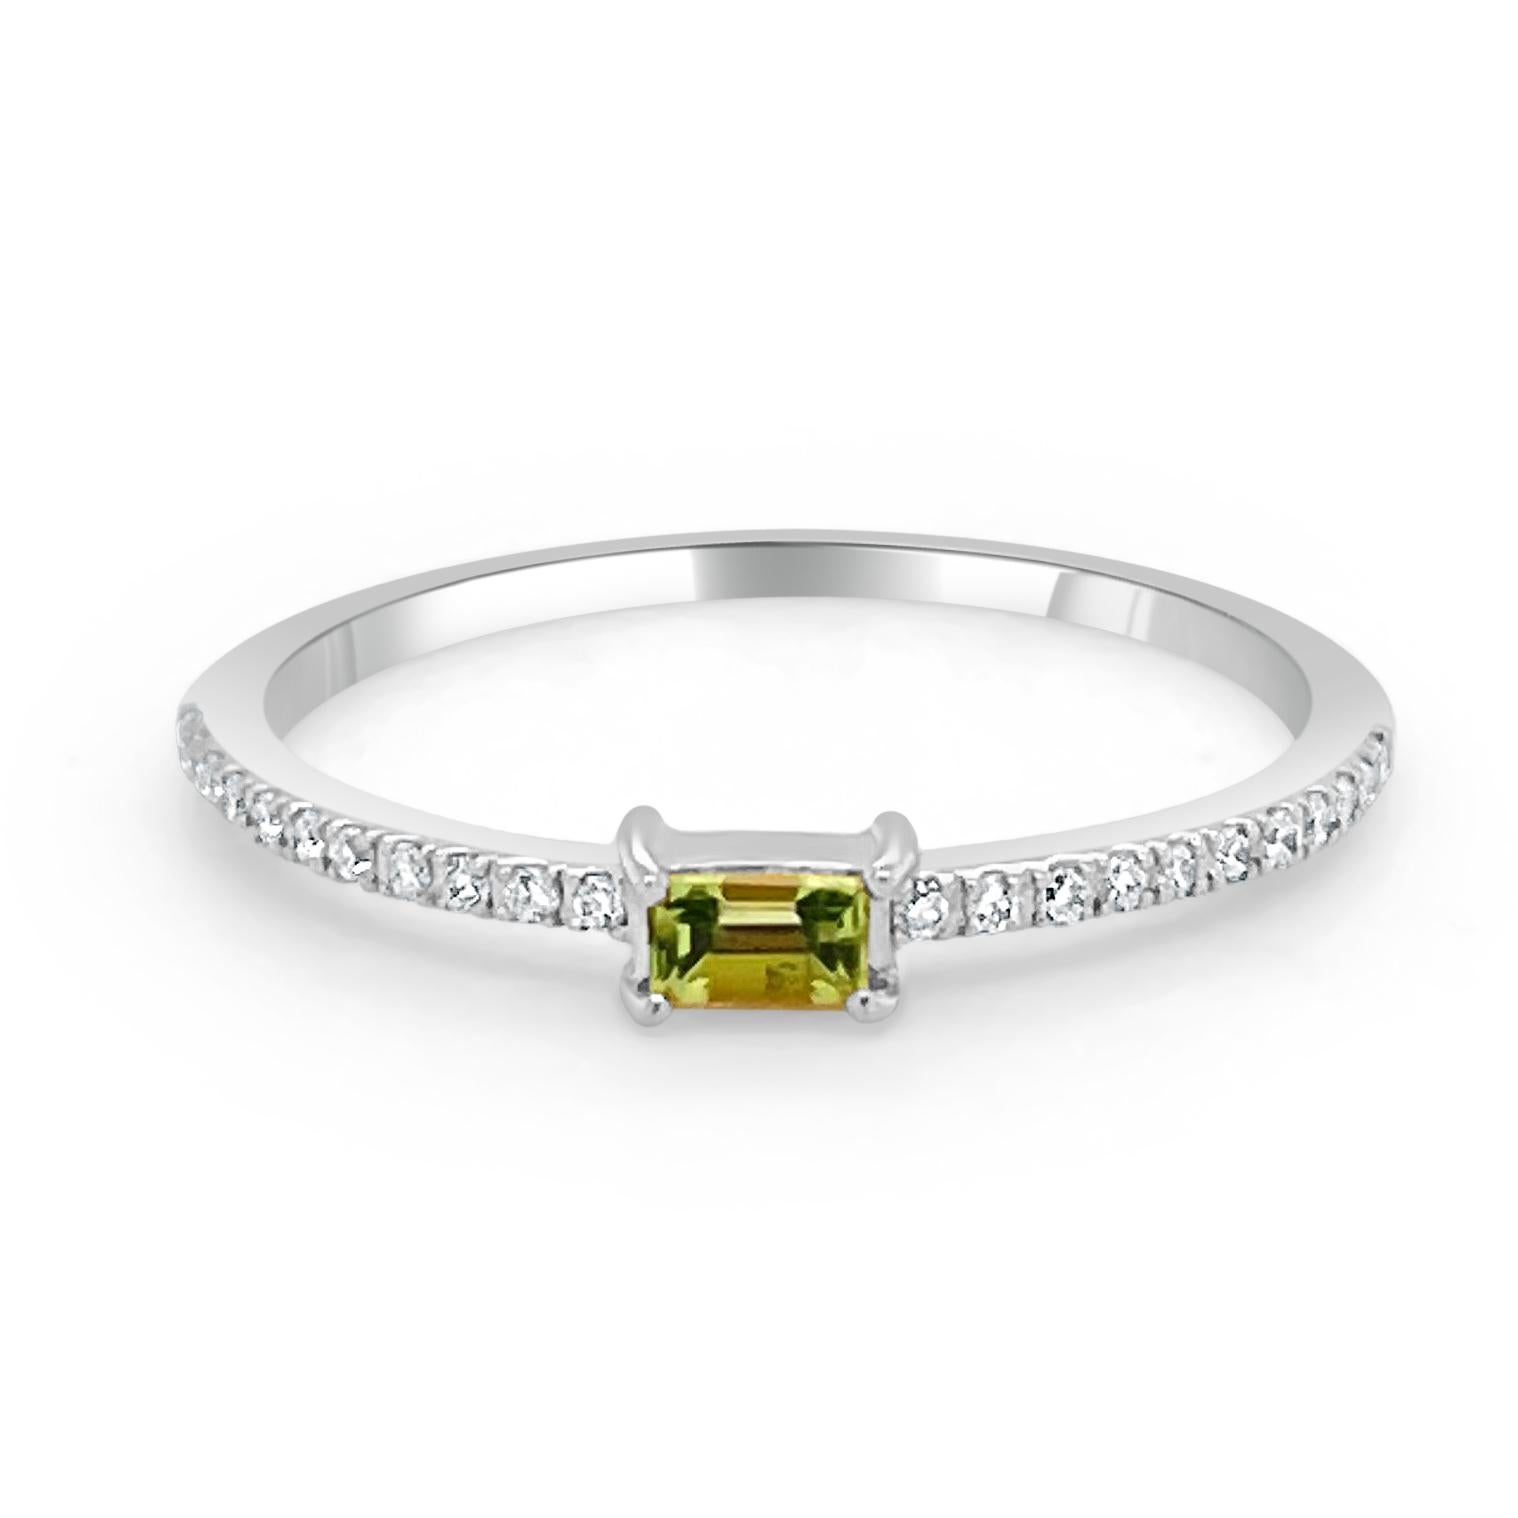 Charmantes und schwer fassbares Design - Dieser stapelbare Ring besteht aus einem 14-karätigen Goldband, einem baguettförmigen, wunderschönen Peridot von ca. 0,16 ct und runden Diamanten von ca. 0,09 ct. 
Maße für die Ringgröße: Die Fingergröße des